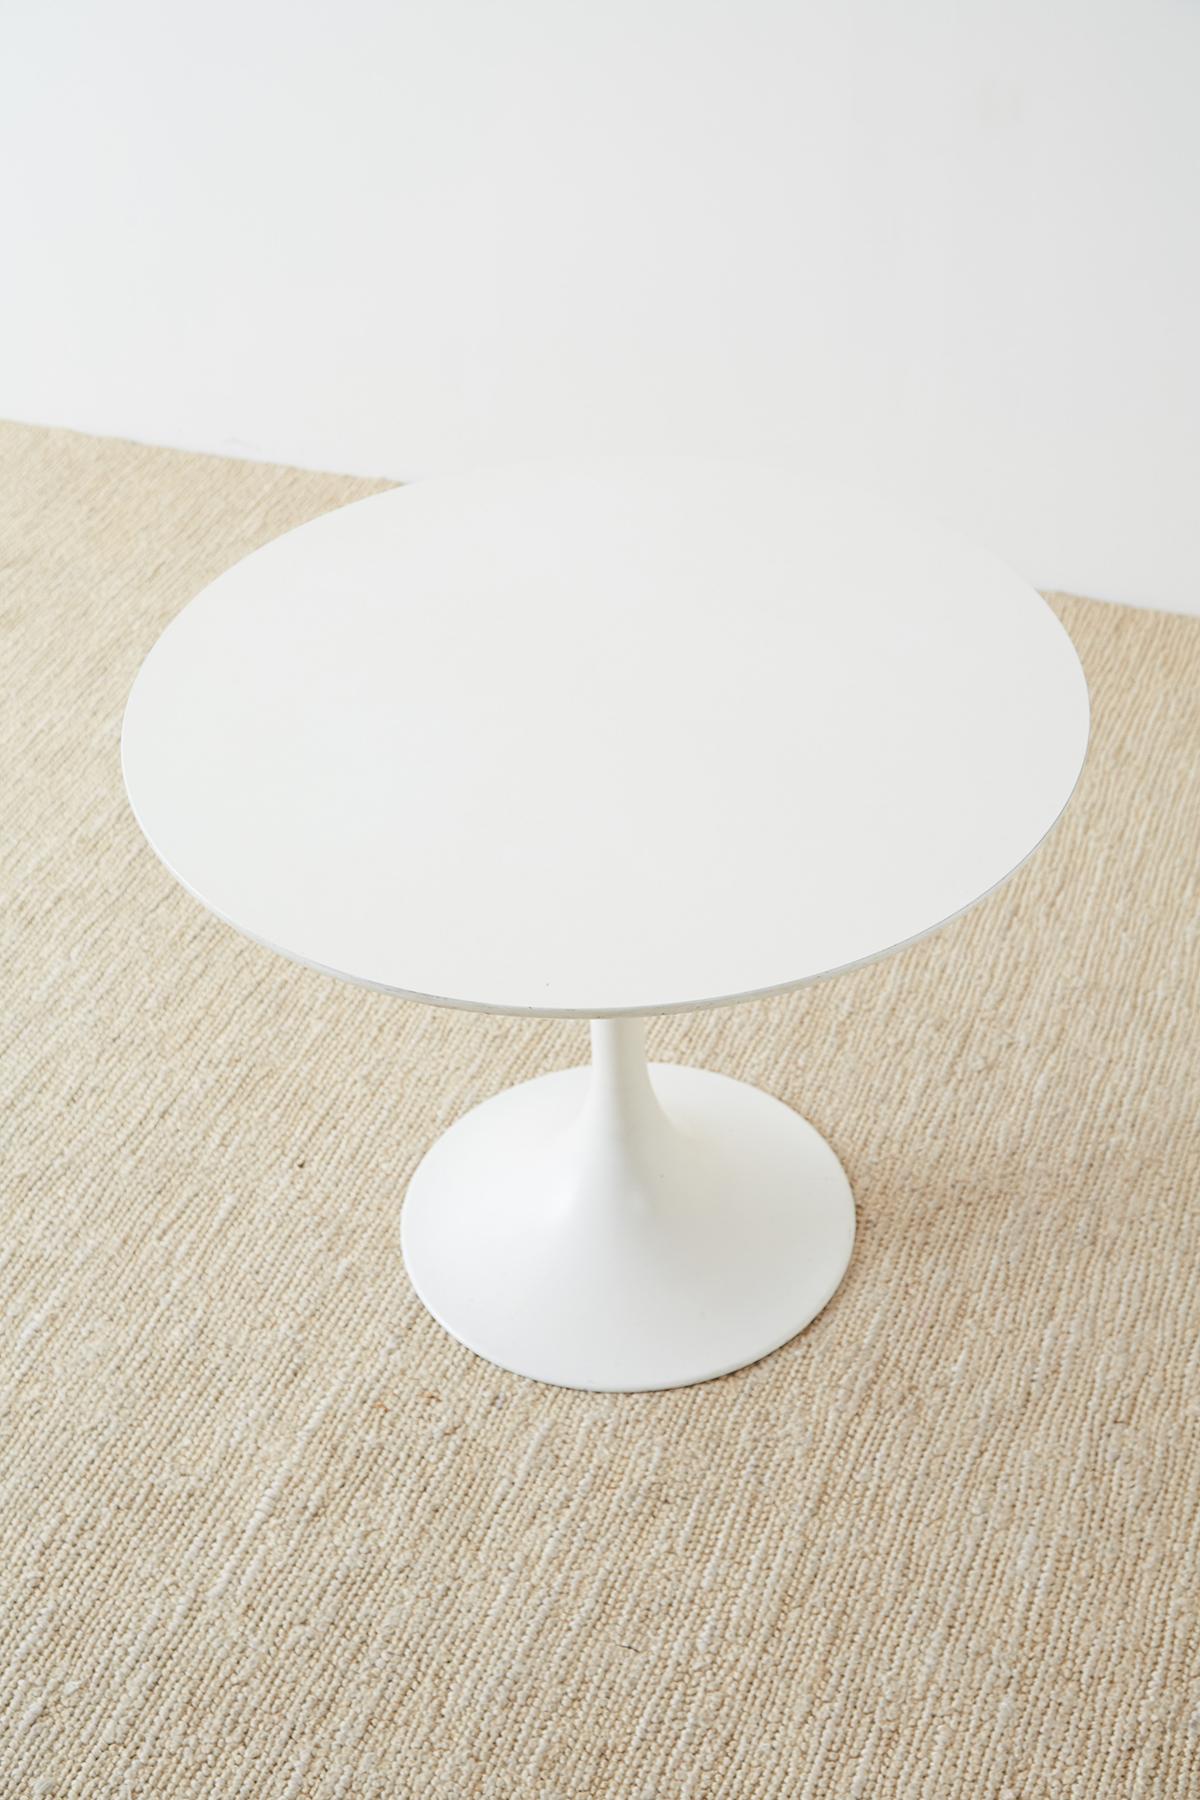 Wood Midcentury Eero Saarinen Style White Tulip Table